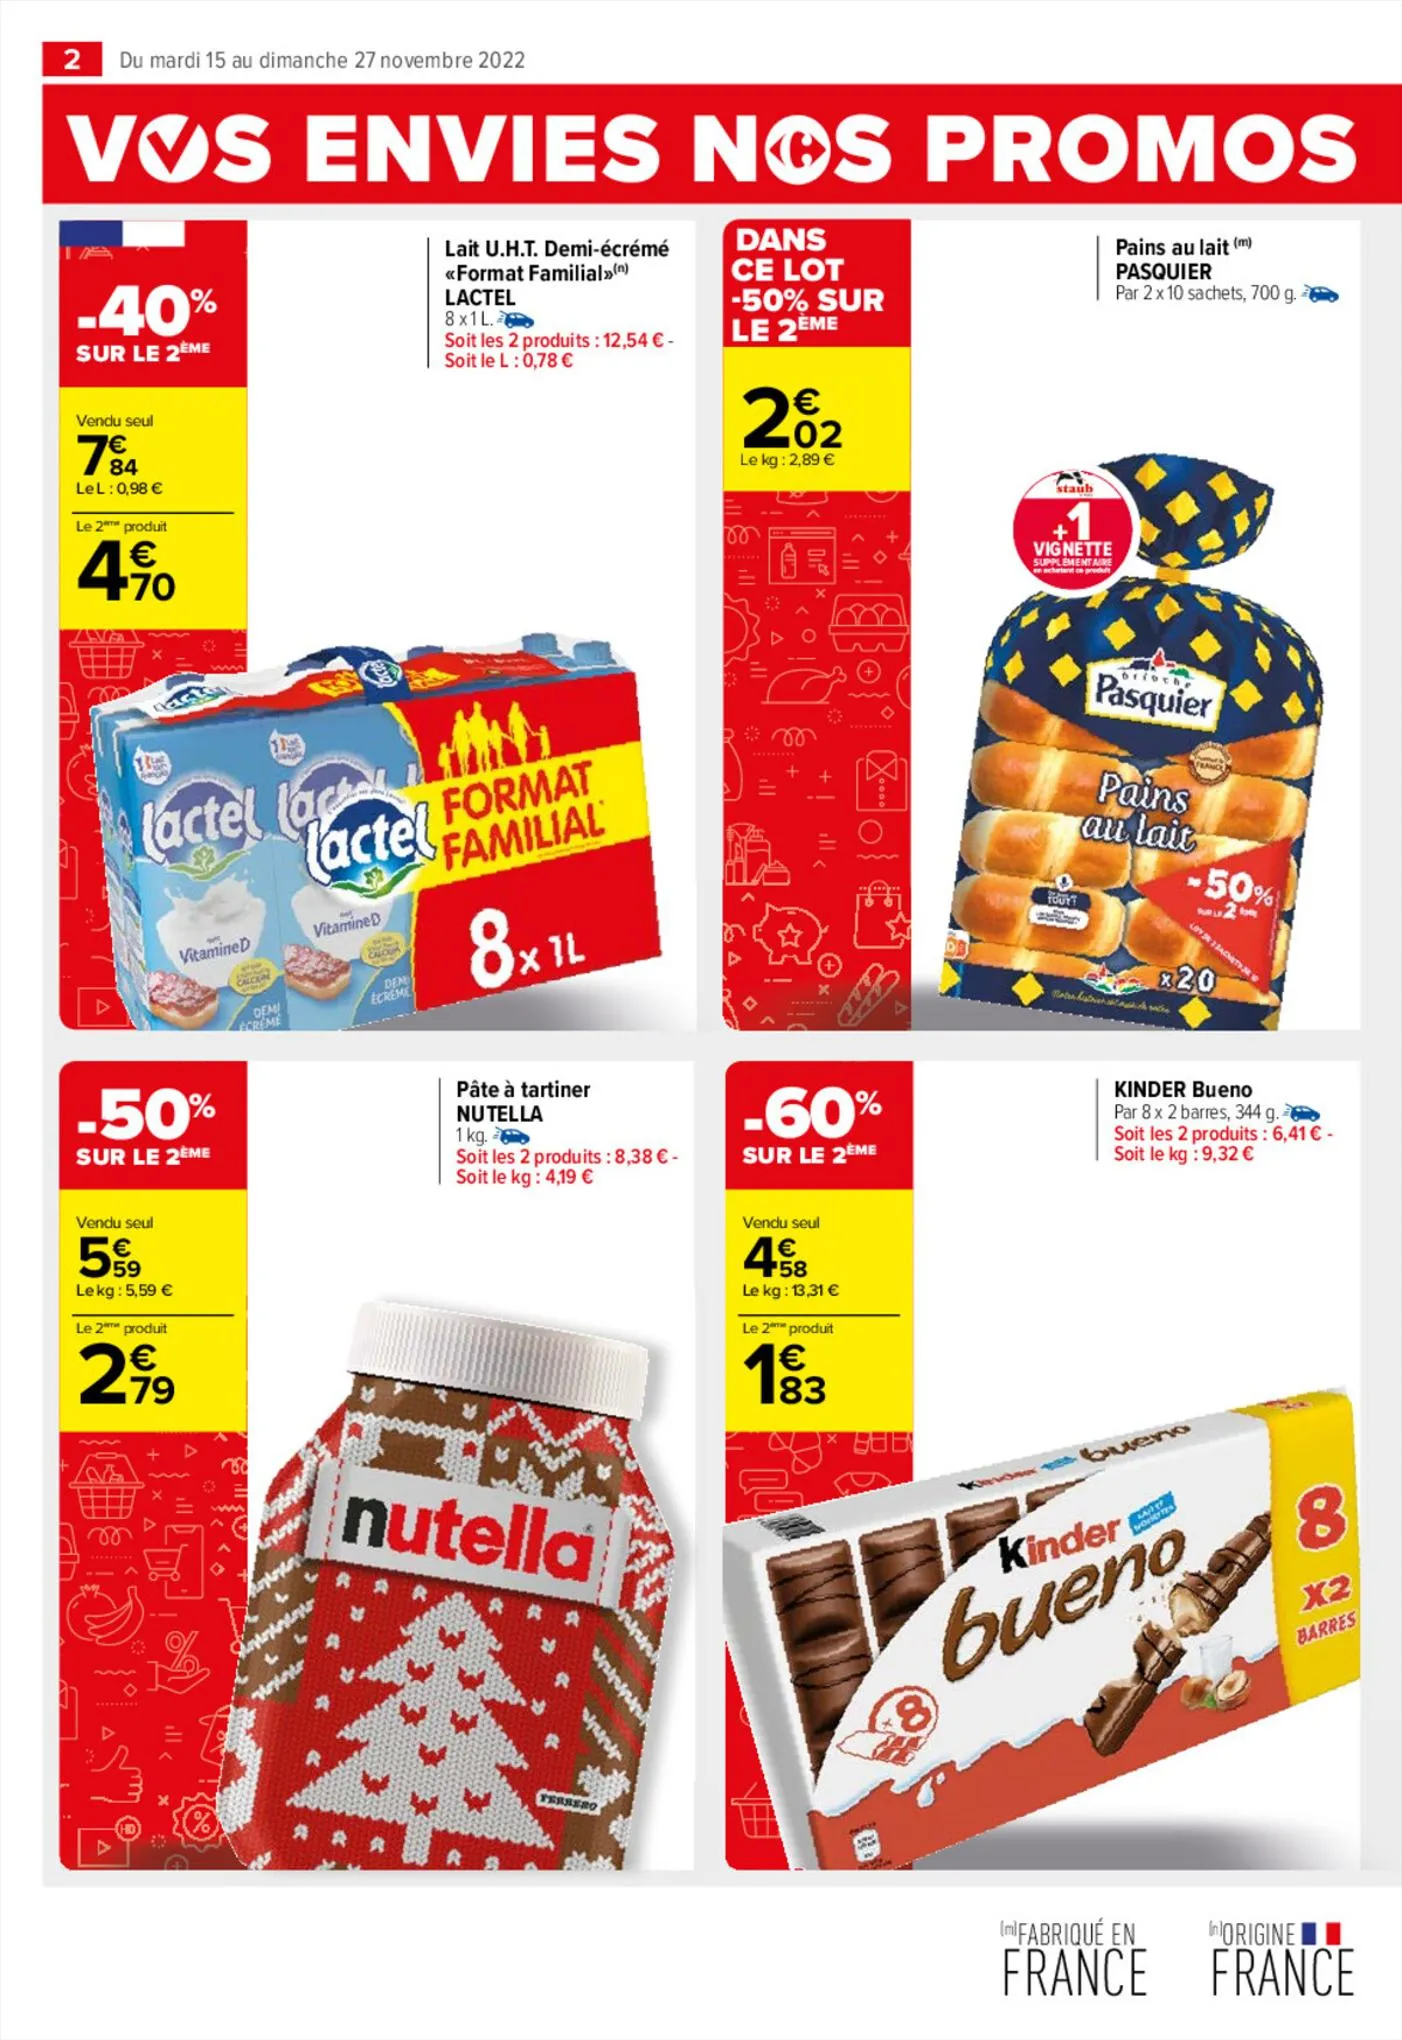 Catalogue Vos envies nos promos Ferrero, page 00004